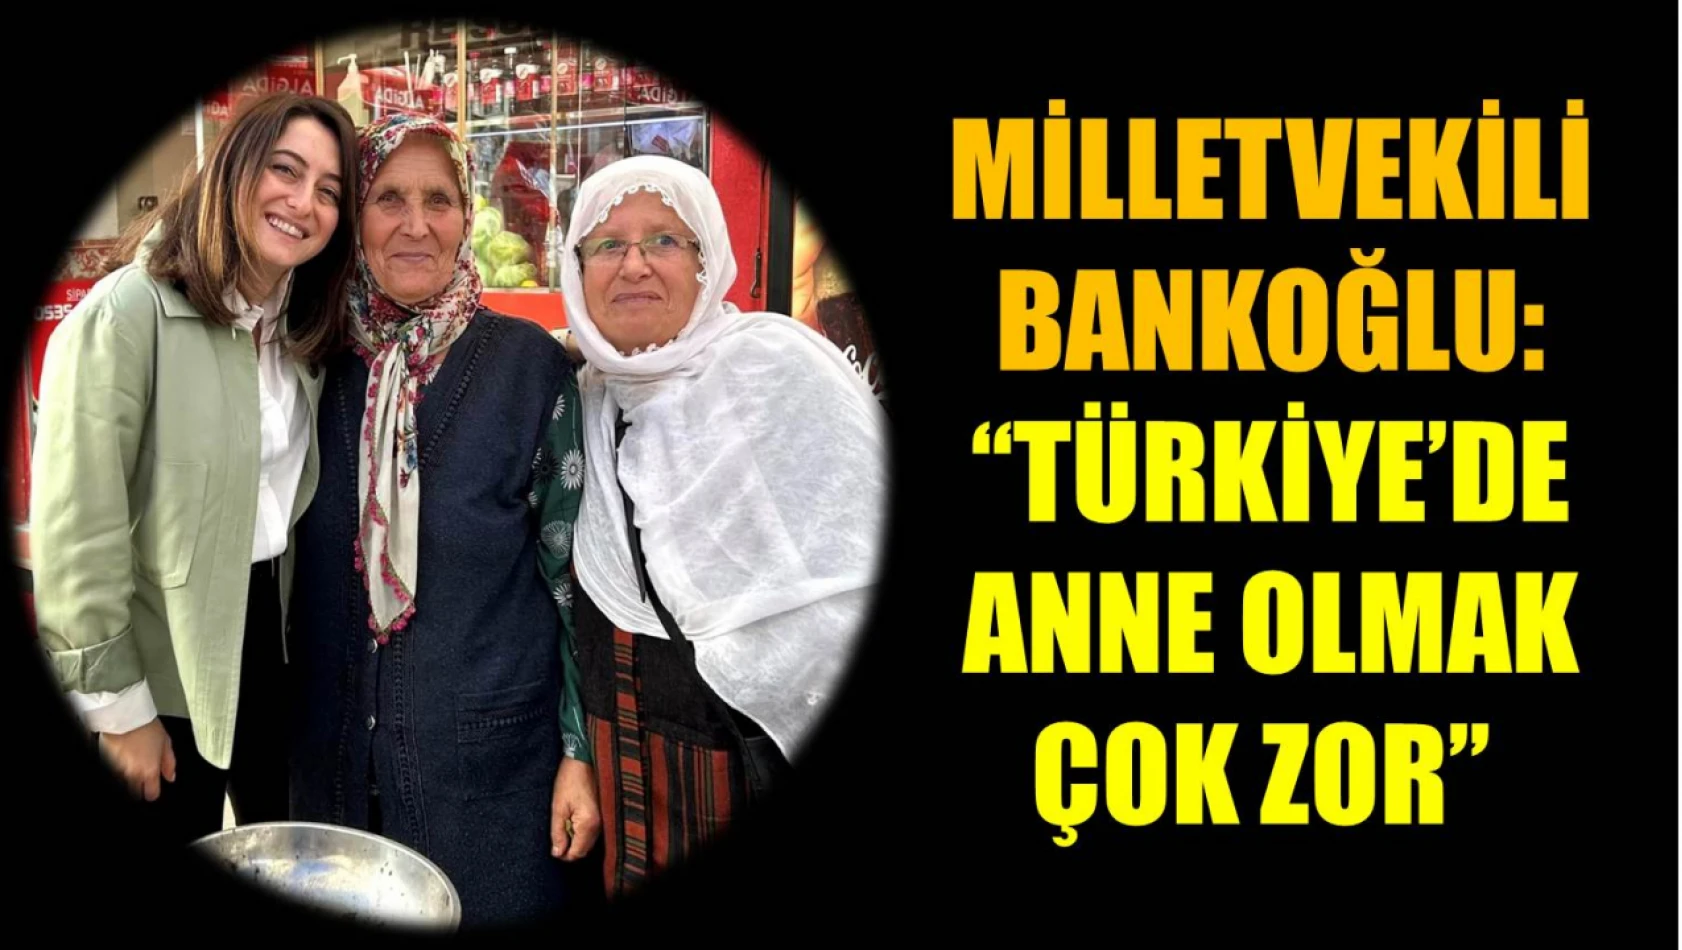 Bankoğlu, Türkiye'de anne olmak çok zor